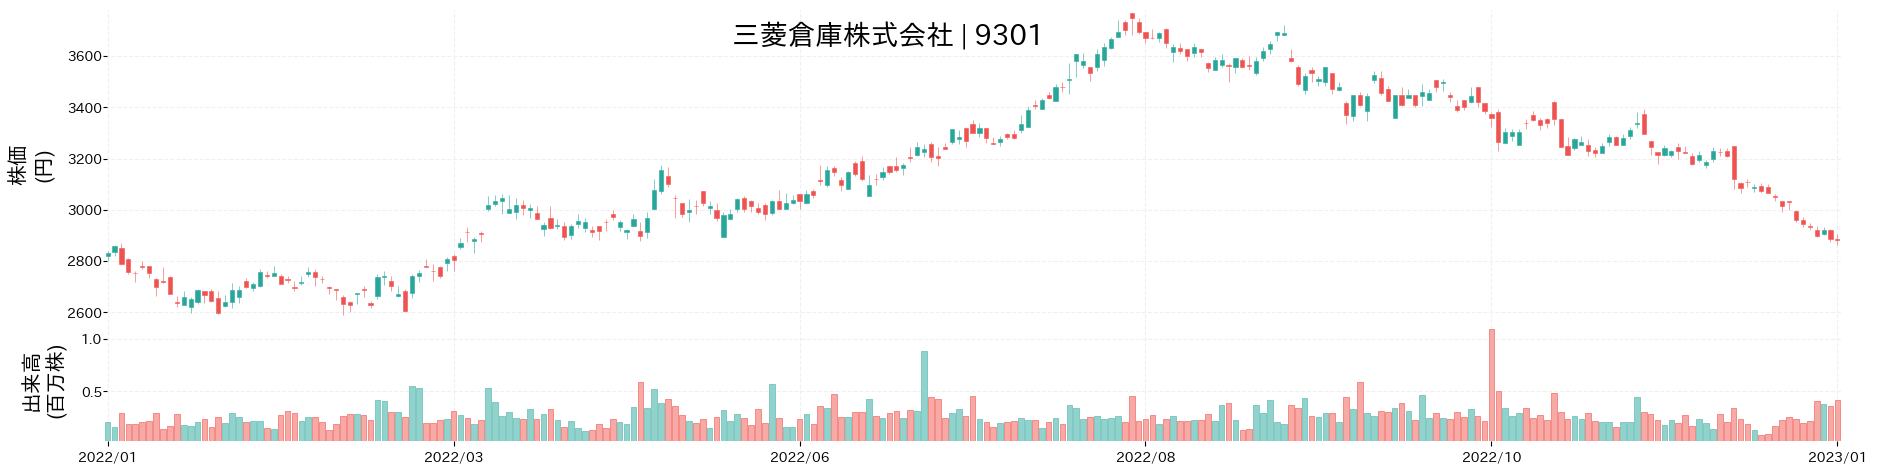 三菱倉庫の株価推移(2022)